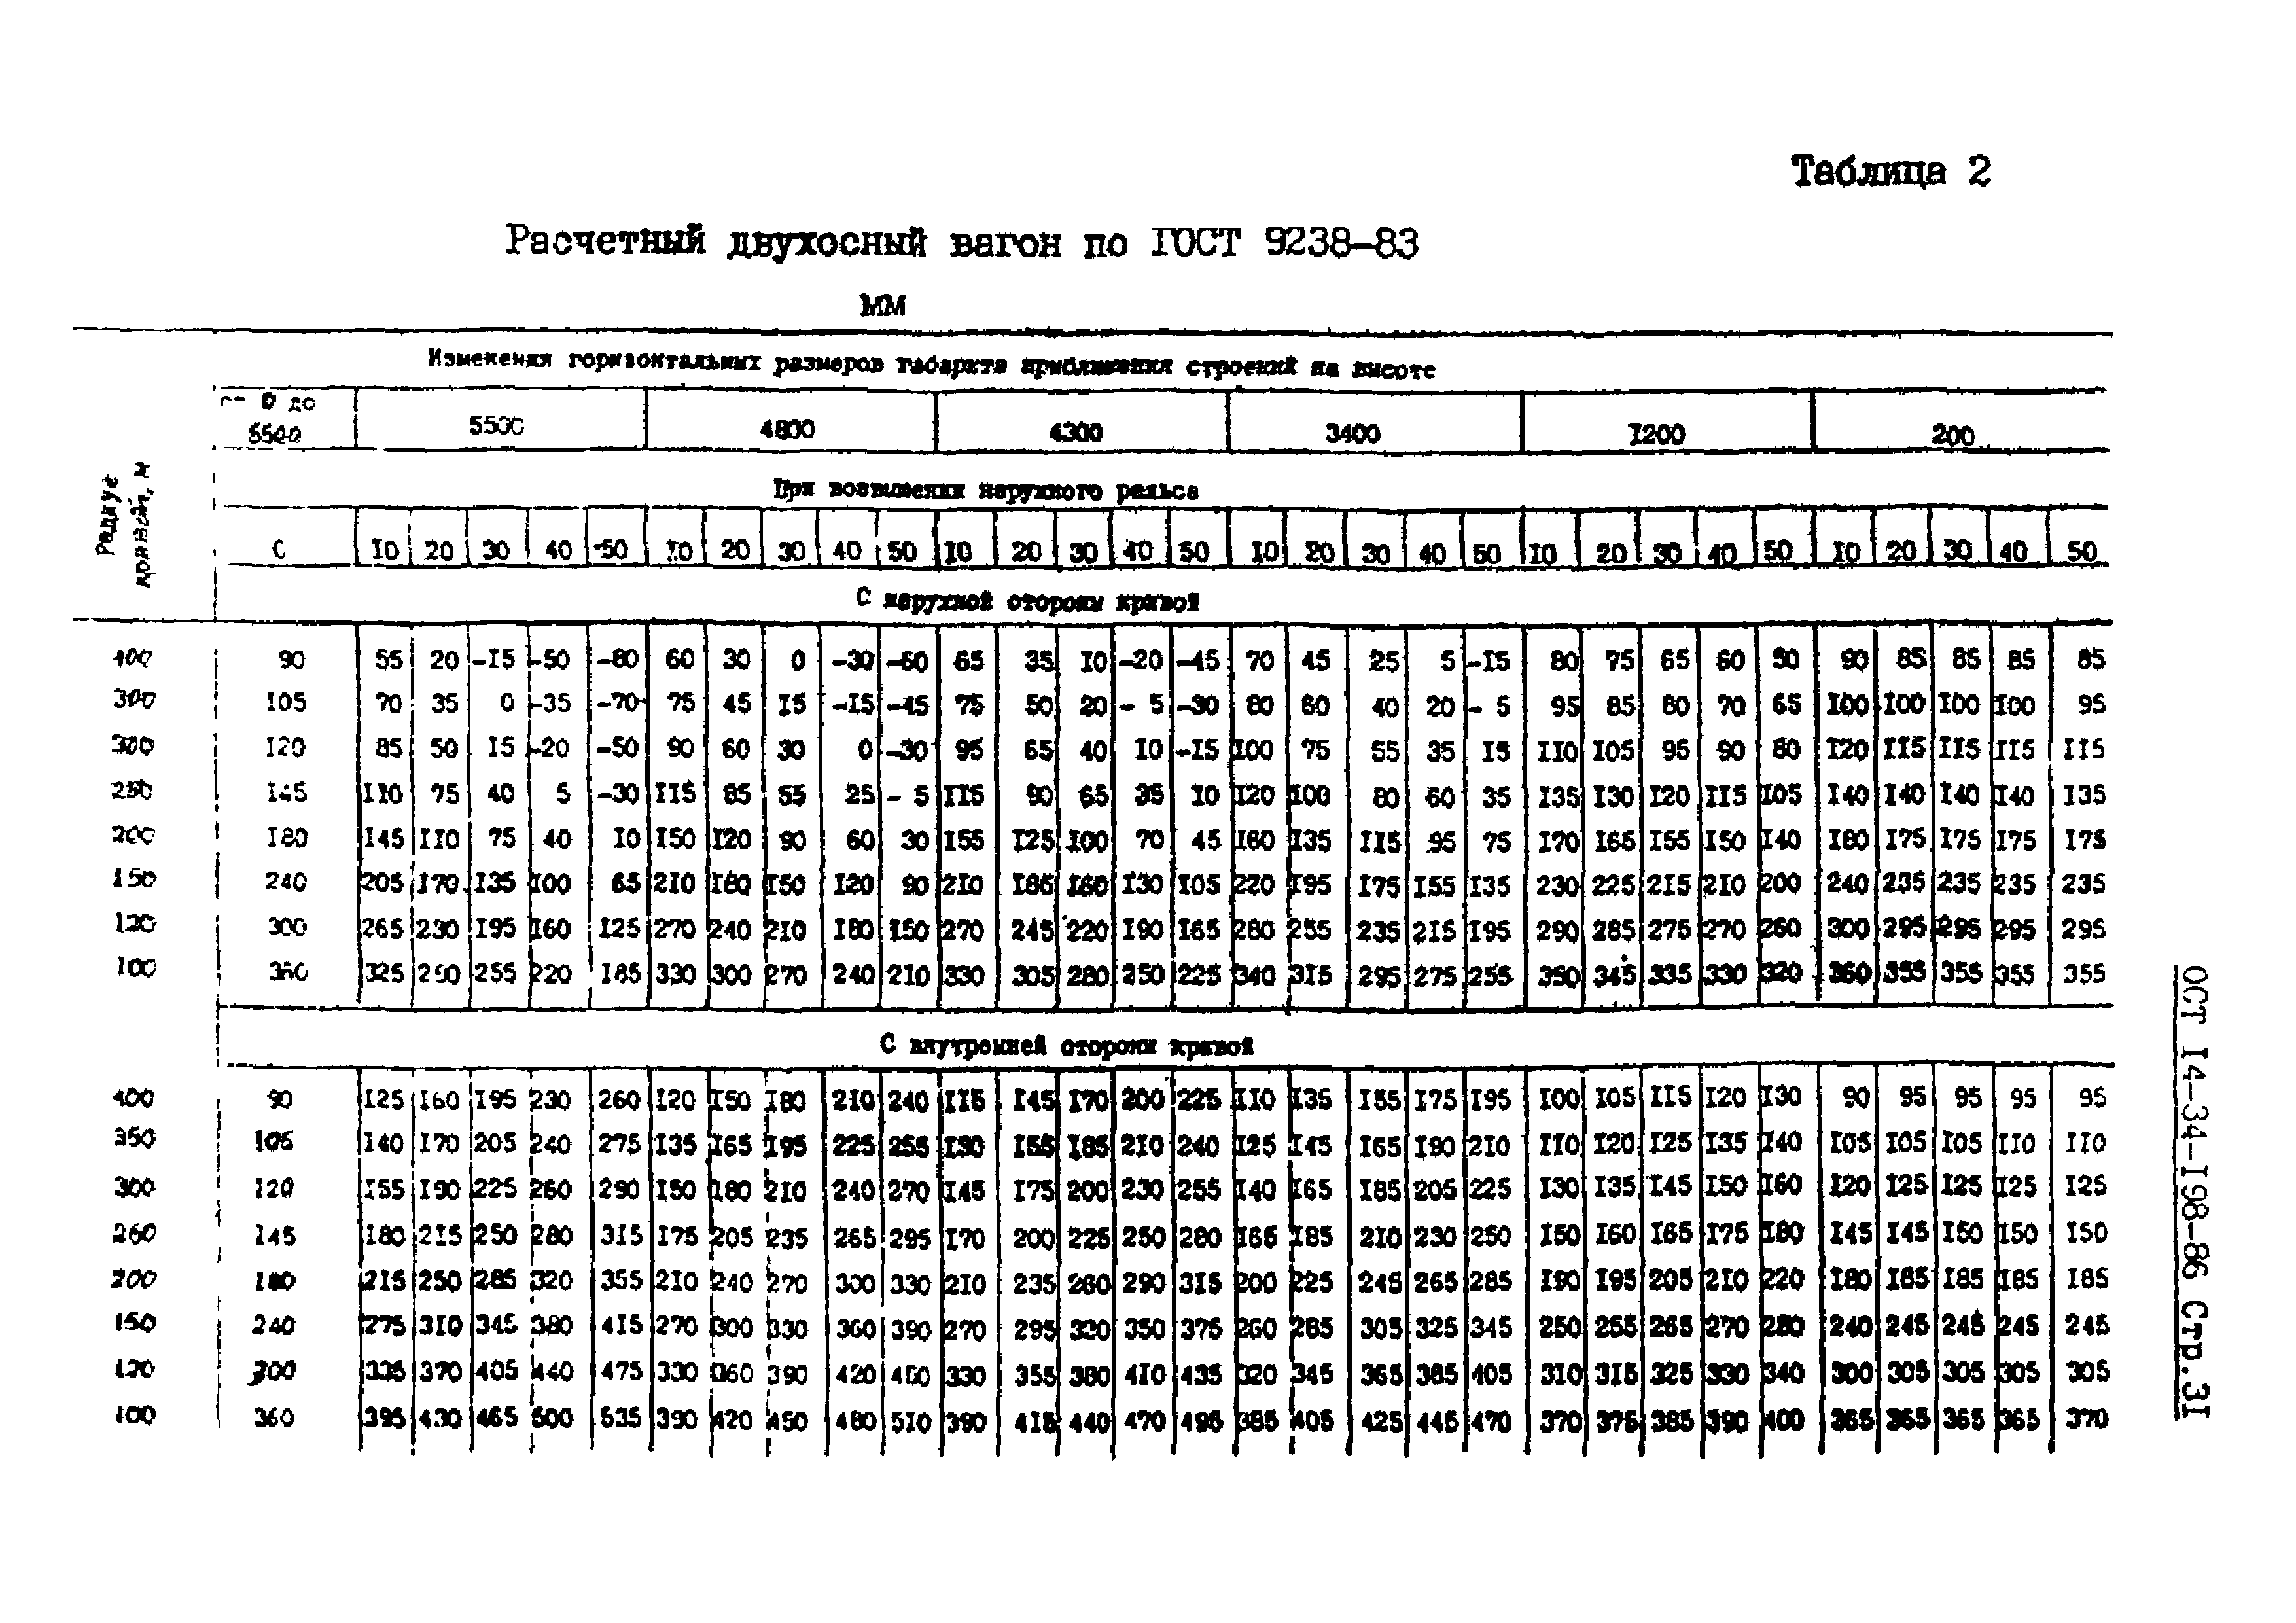 ОСТ 14-34-198-86